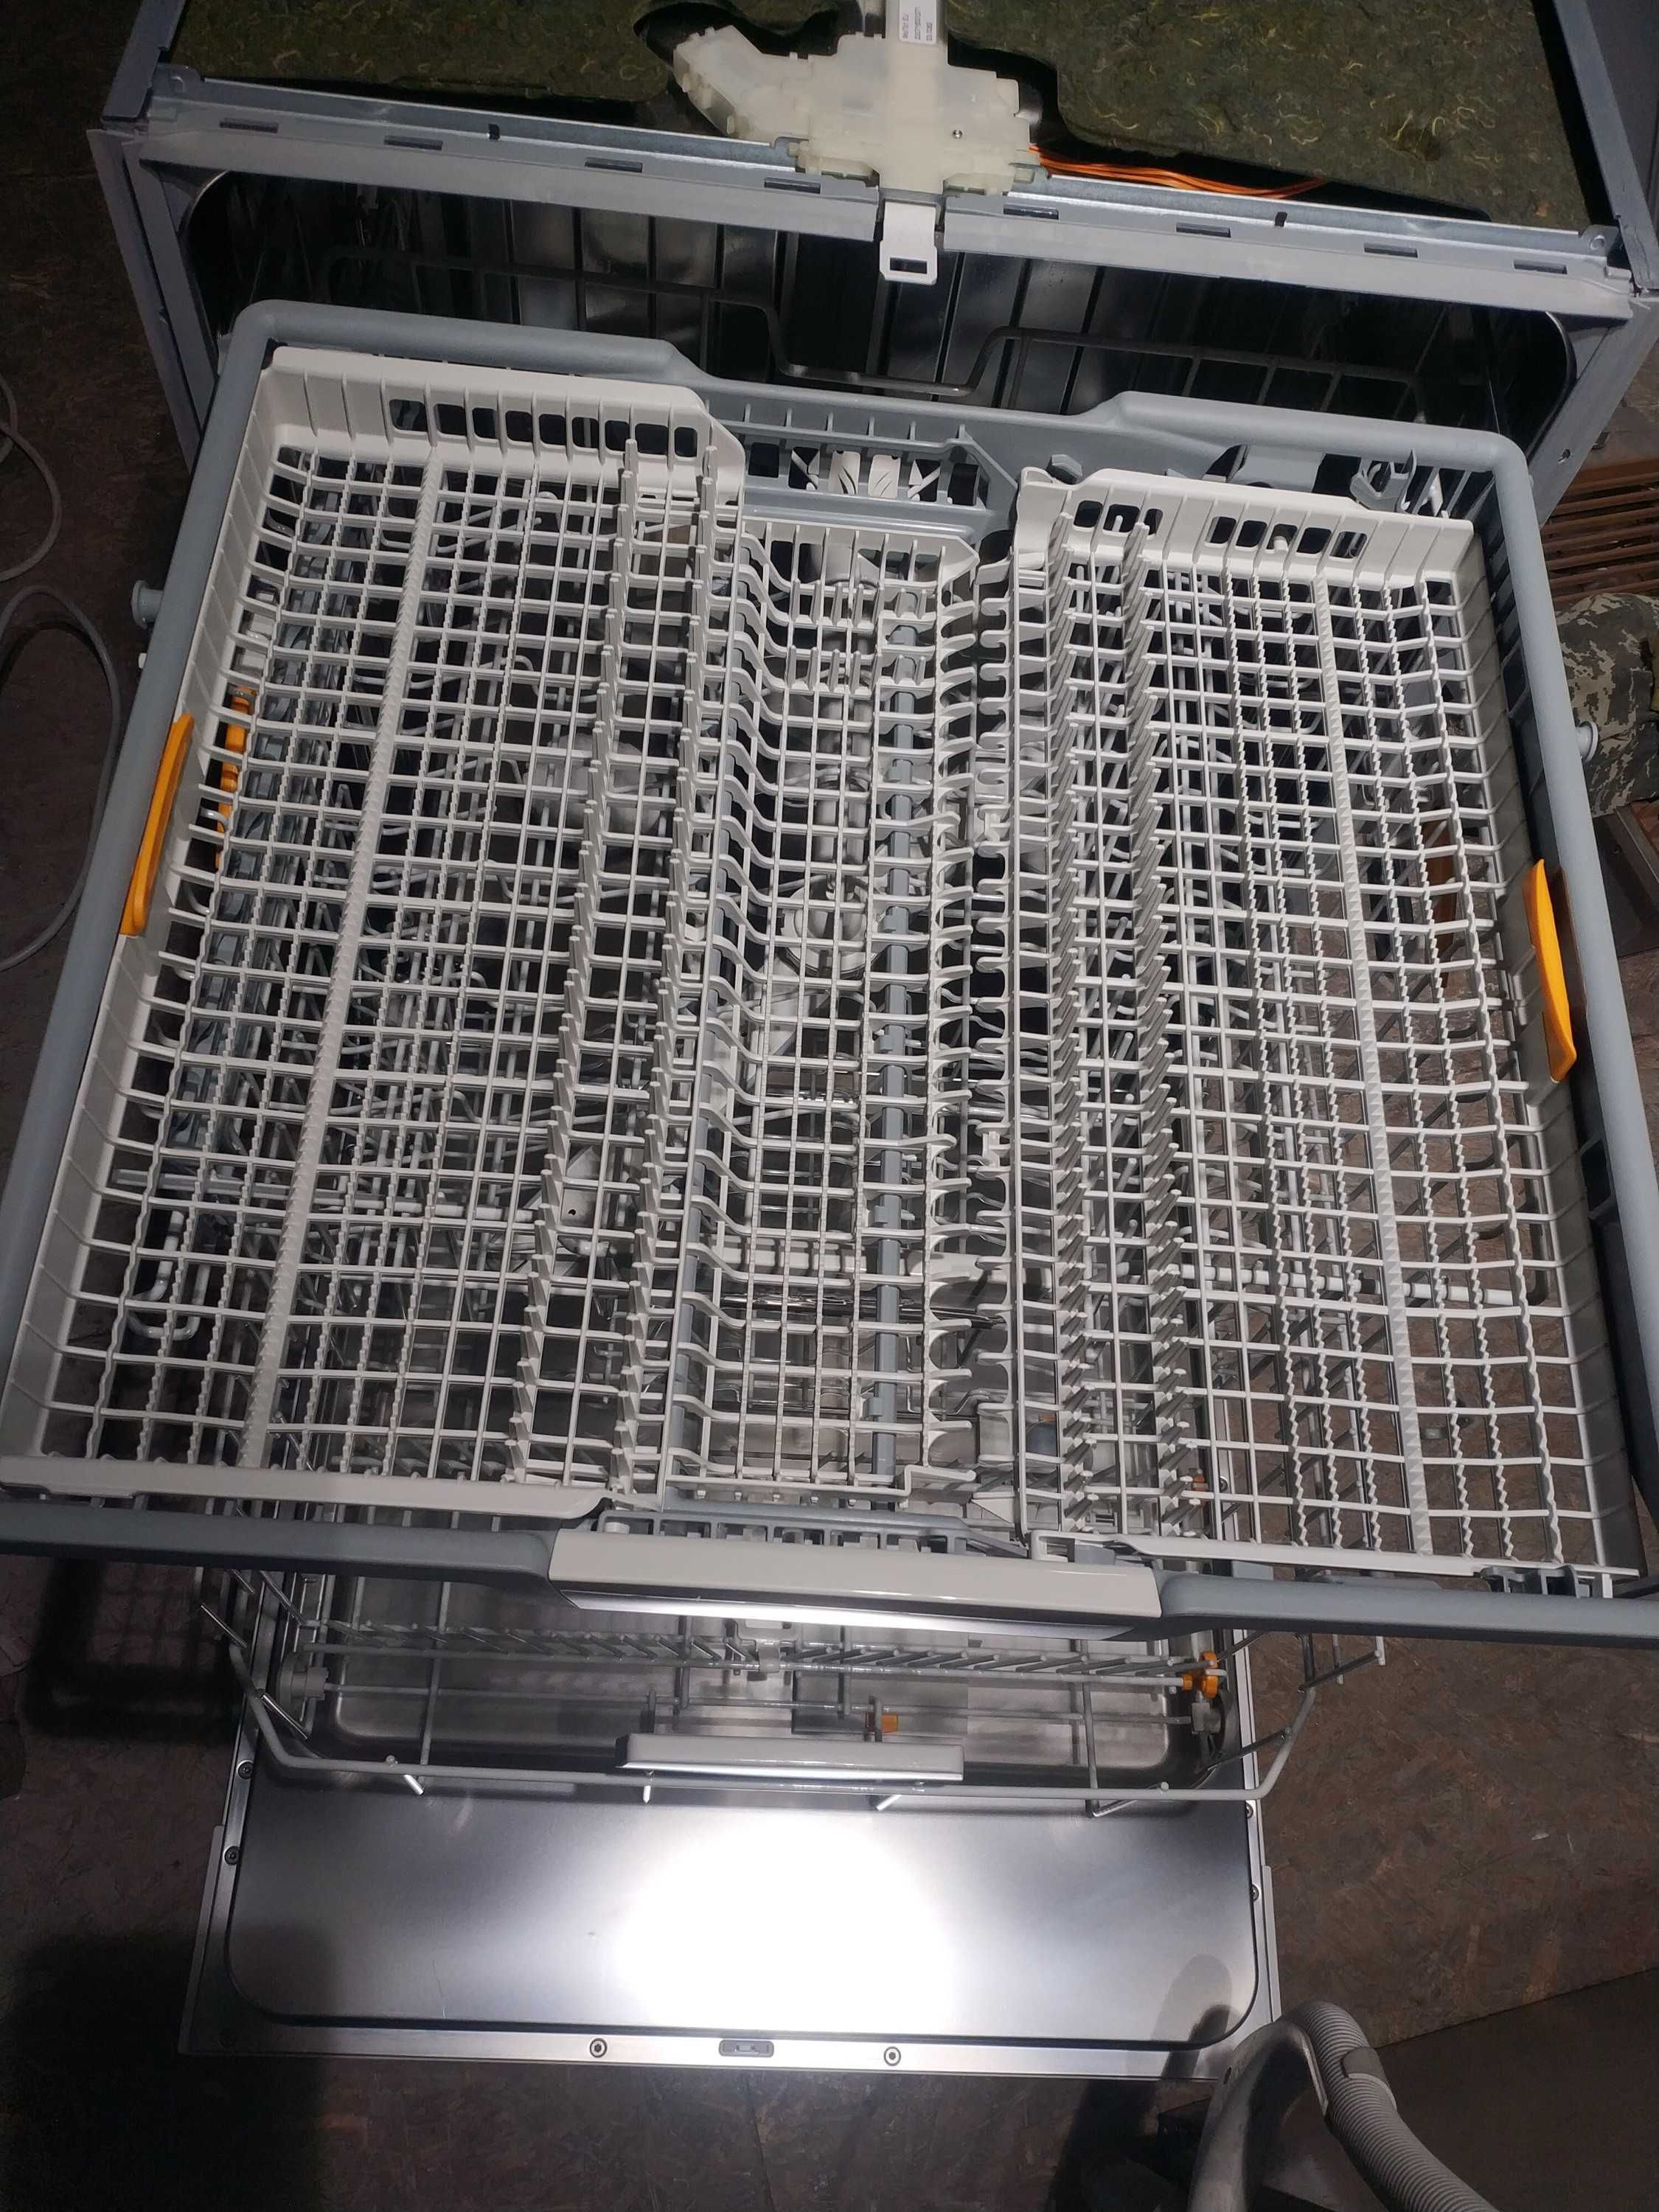 Встраиваемая белая посудомоечная машина Miele G 5210 AutoOpen